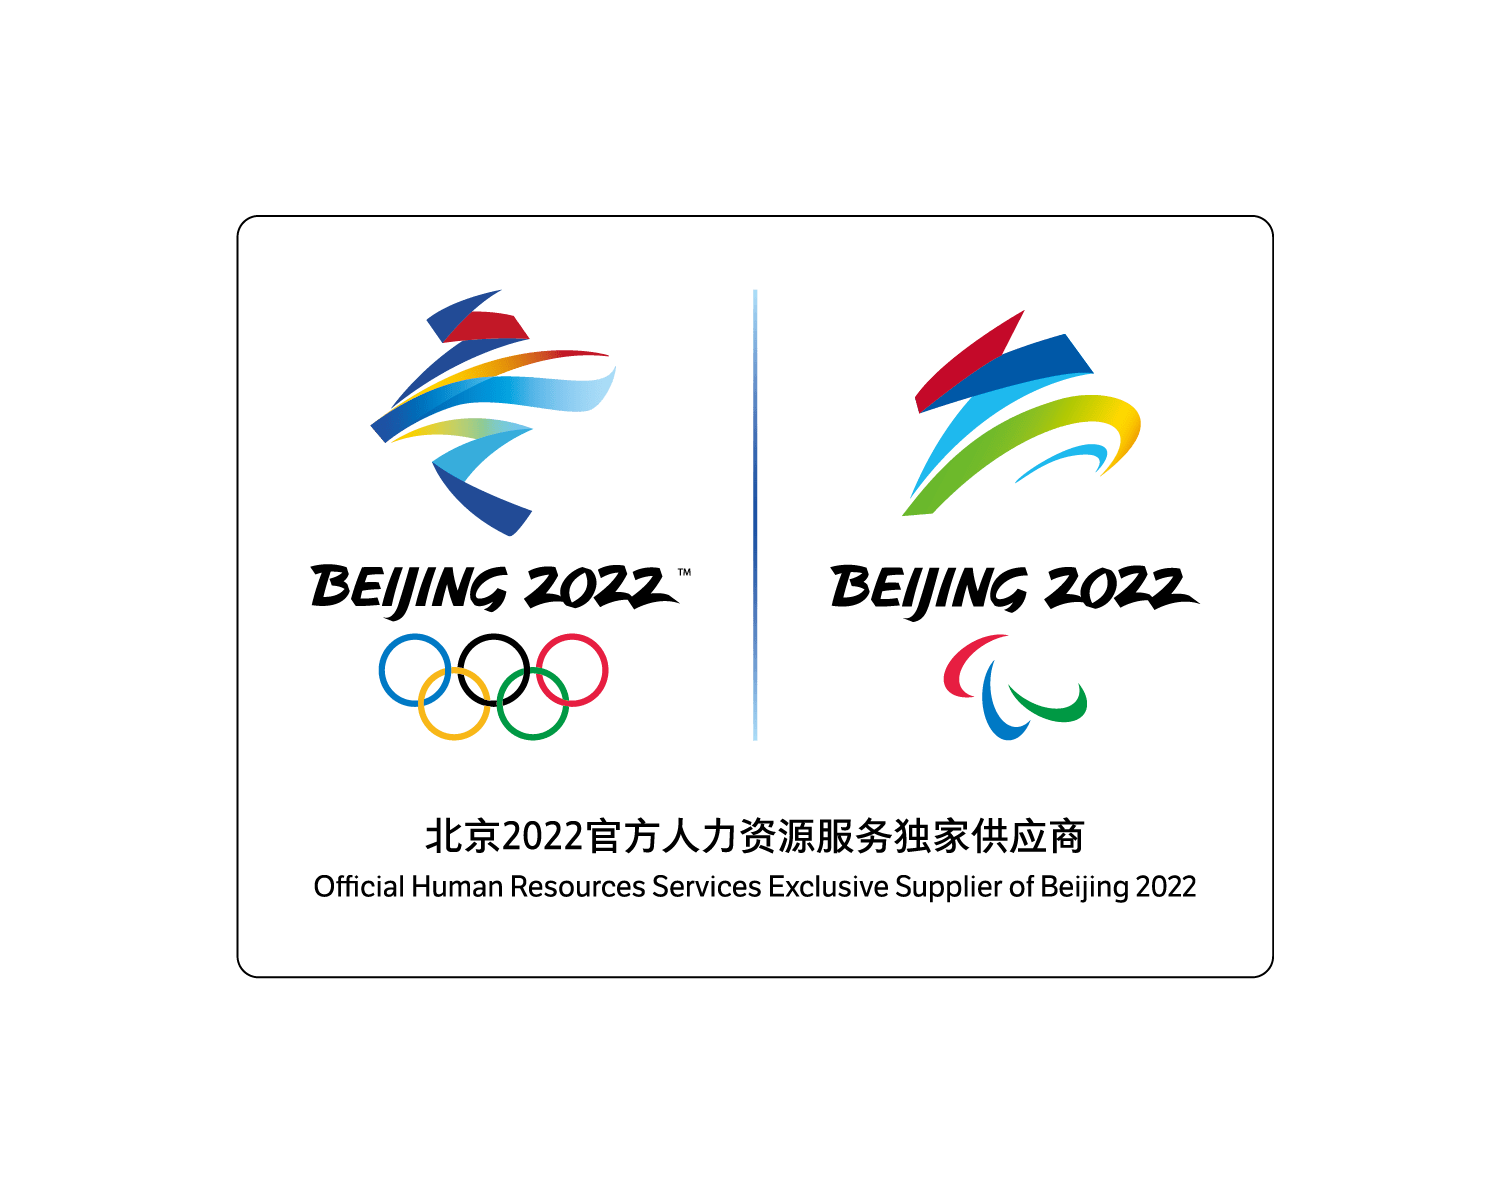 boss直聘成为北京2022年冬奥会和冬残奥会官方人力资源服务独家供应商